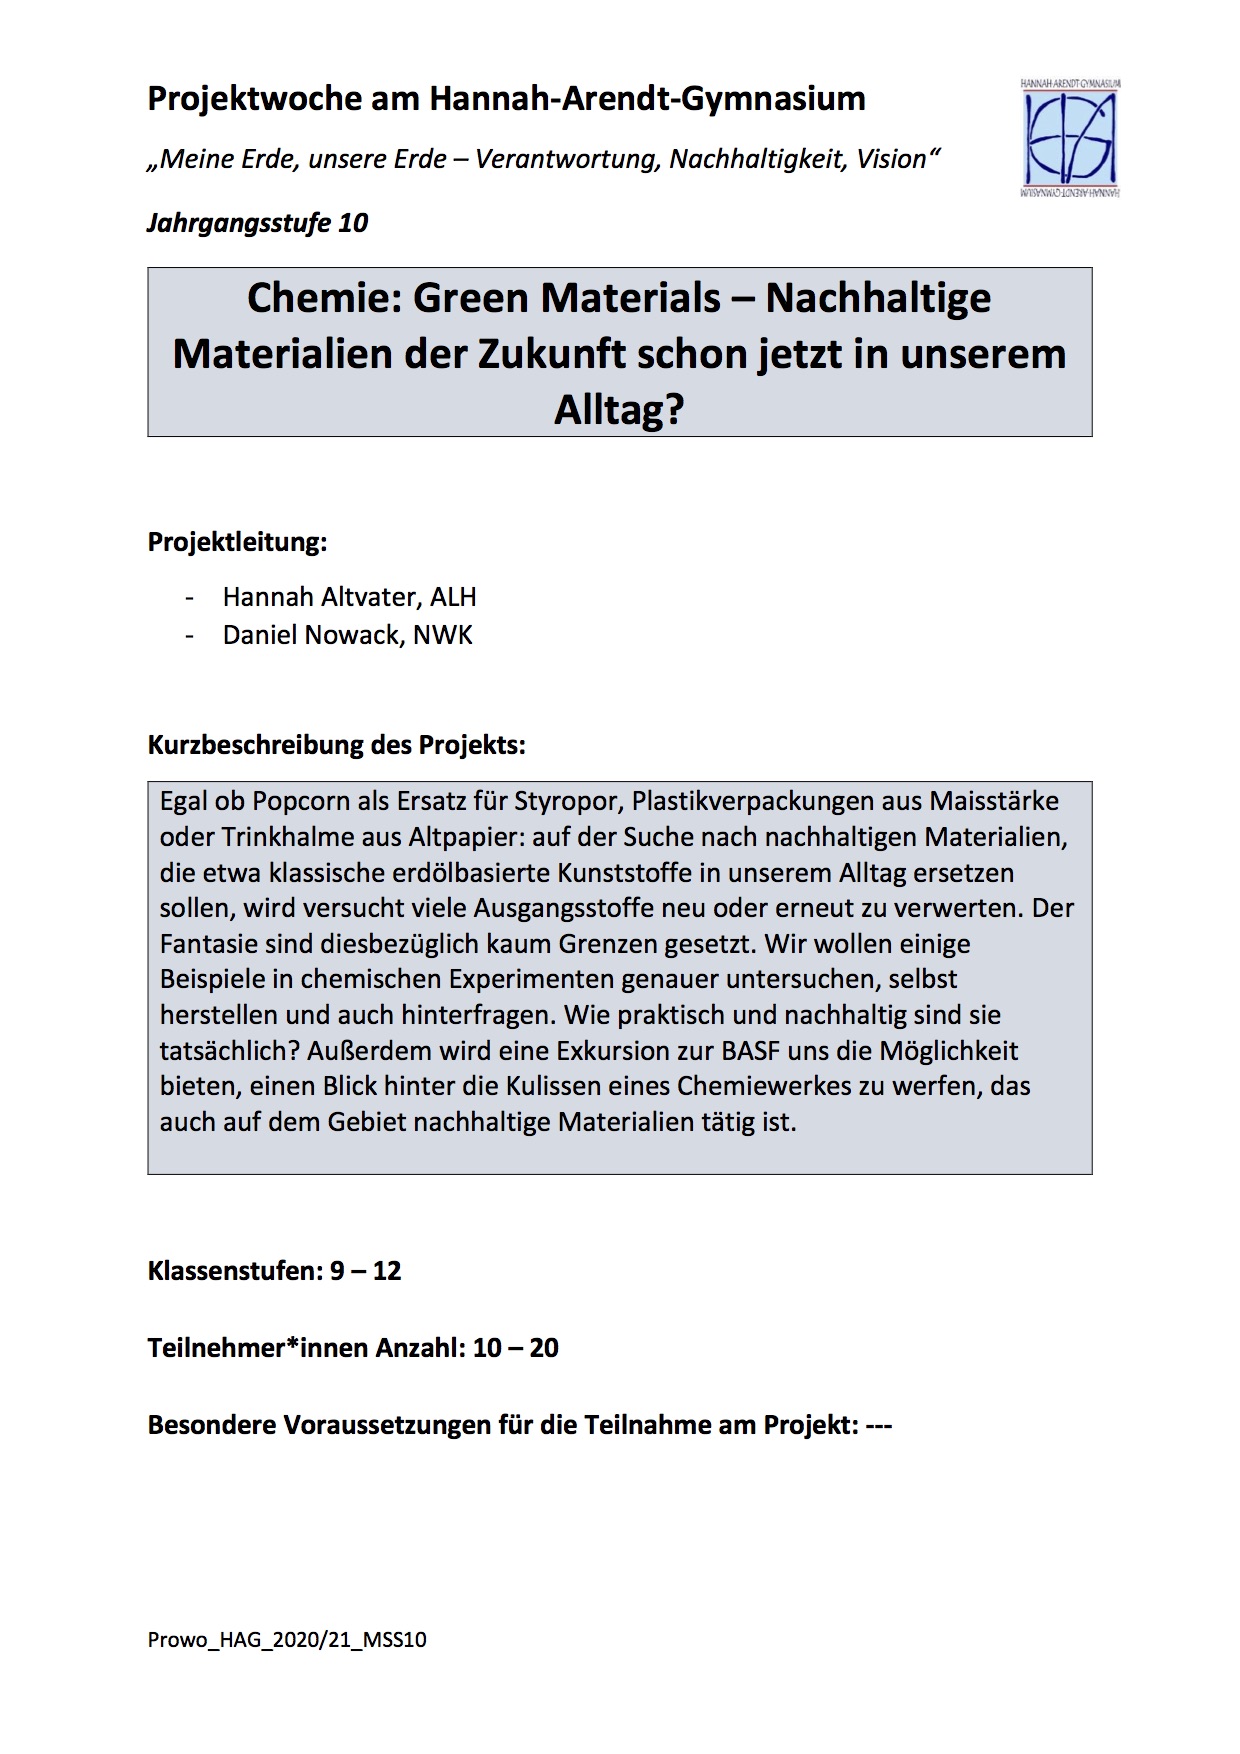 Chemie: Green Materials - nachhaltige Materialien der Zukunft schon jetzt in unserem Alltag?